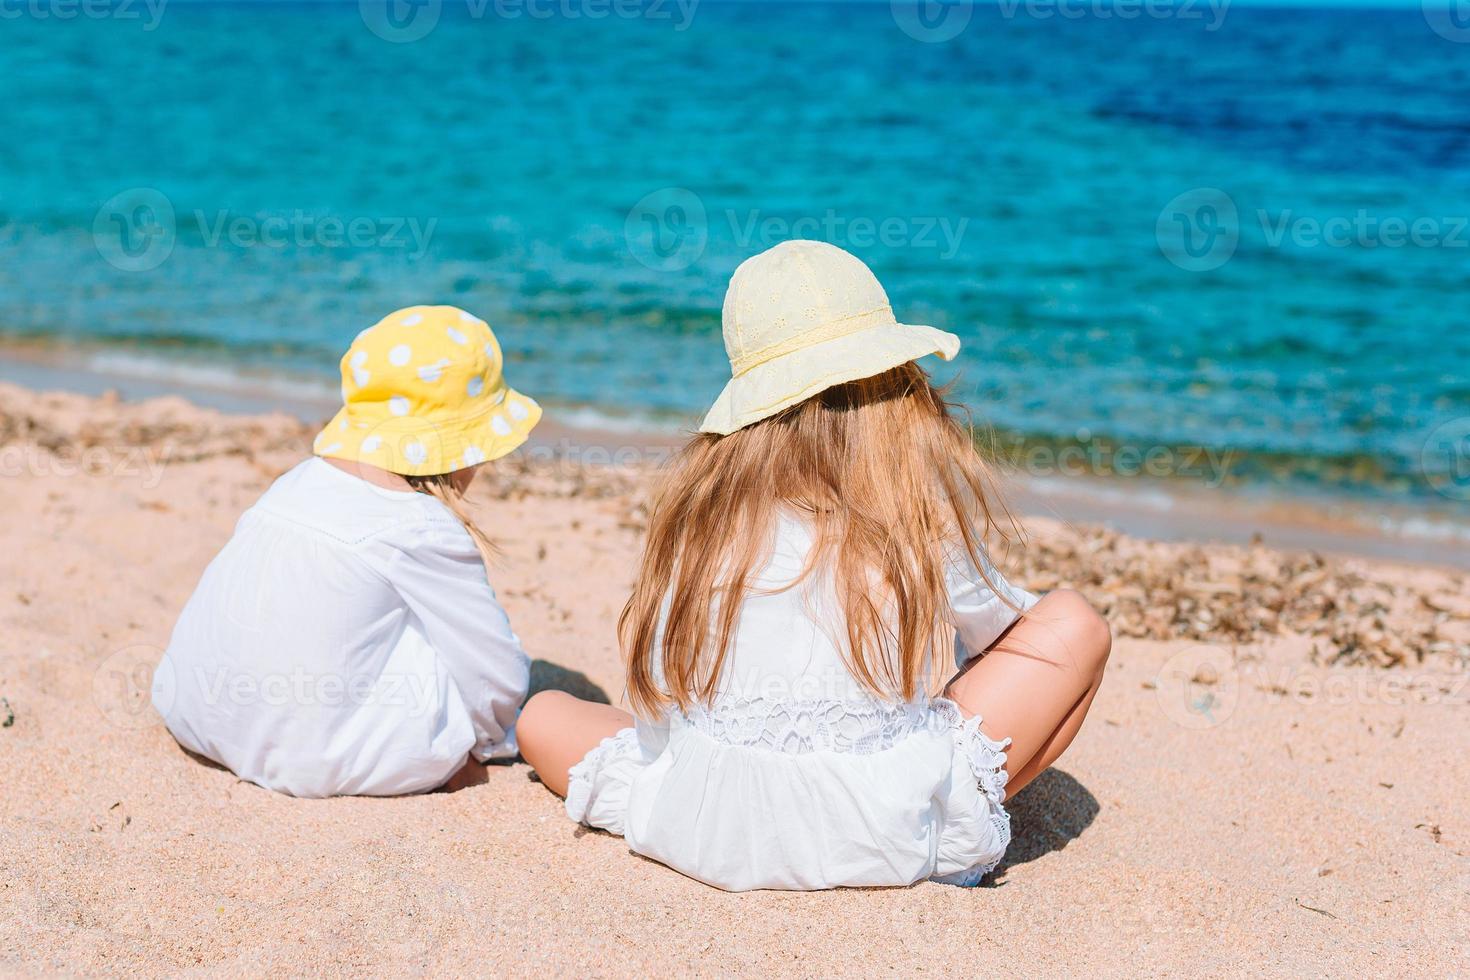 les petites filles drôles et heureuses s'amusent beaucoup sur la plage tropicale en jouant ensemble. photo